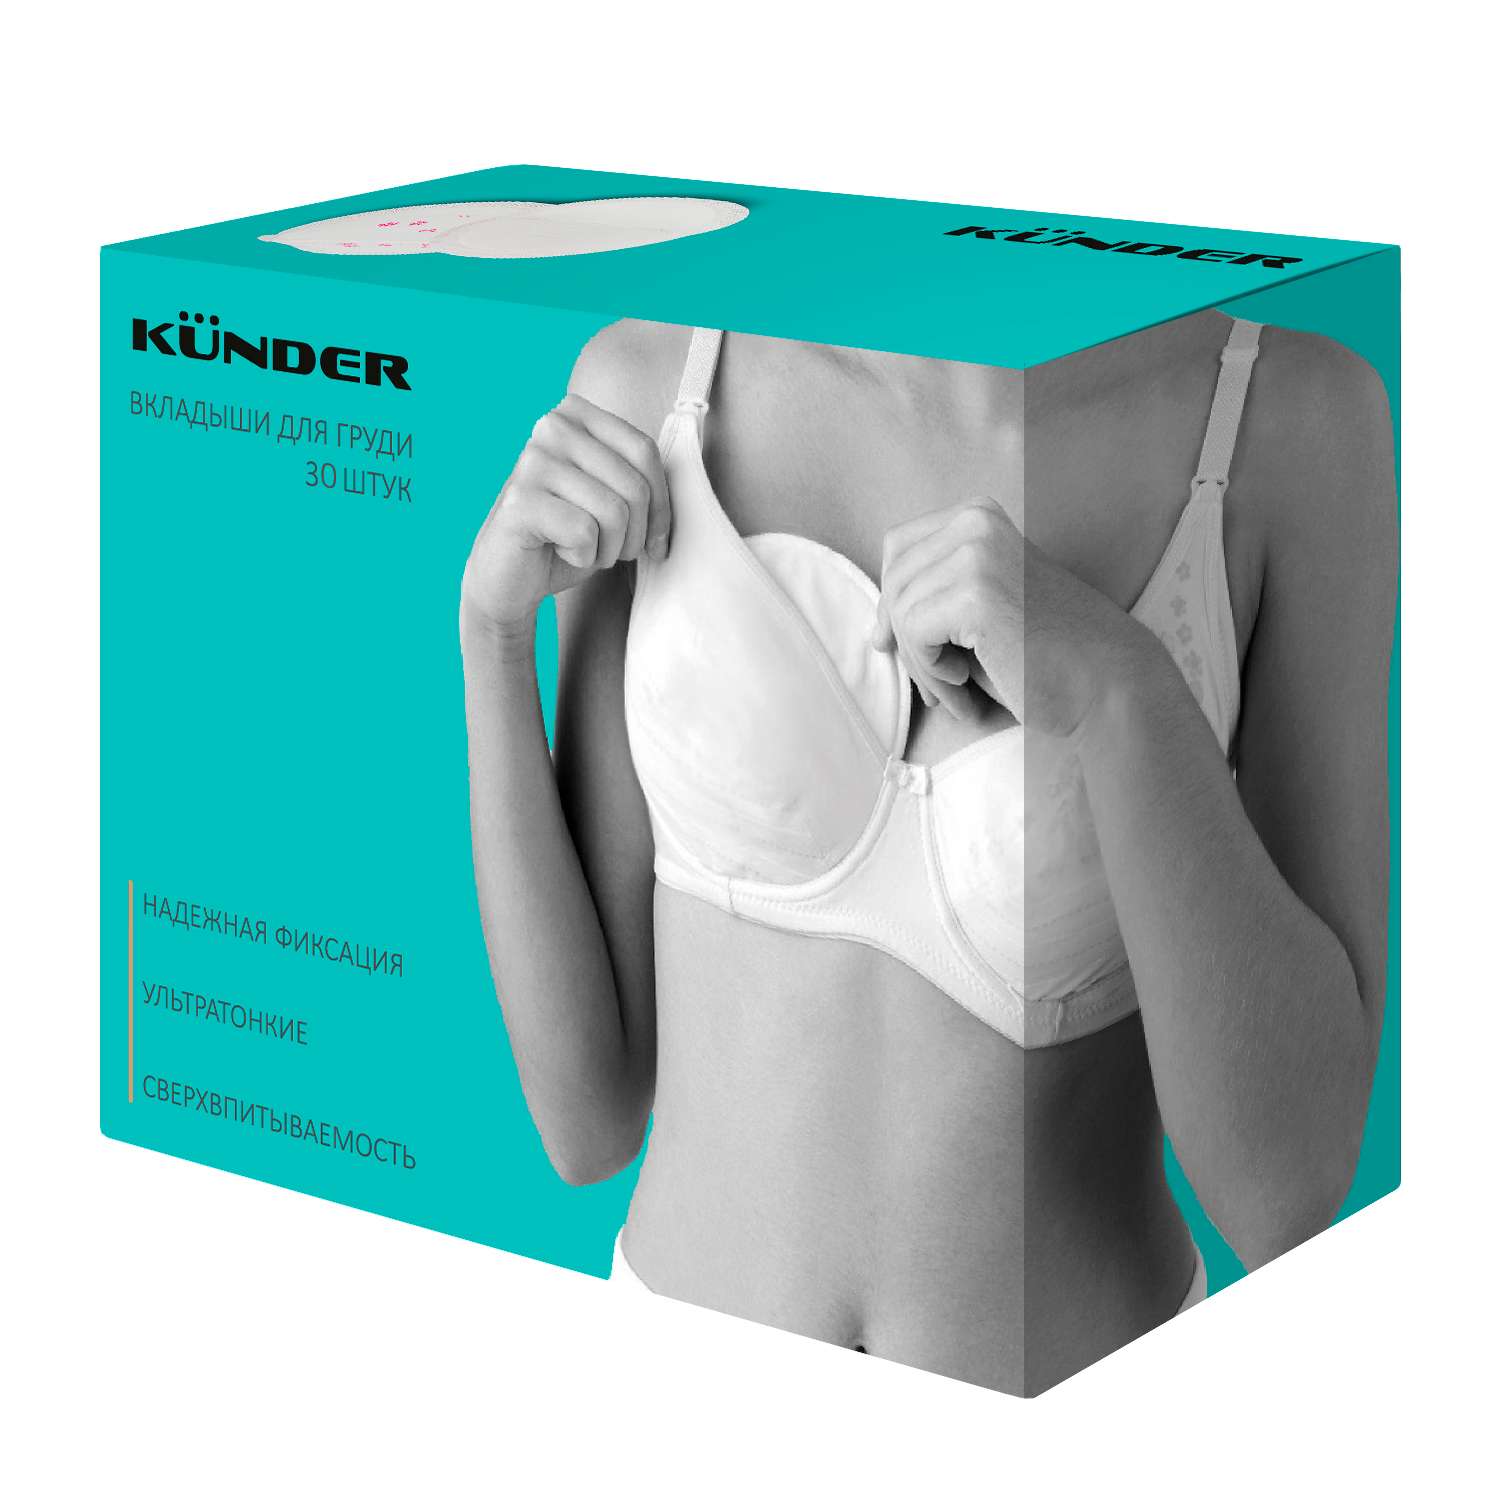 Прокладки для груди KUNDER гелевые в бюстгальтер 30шт - фото 1